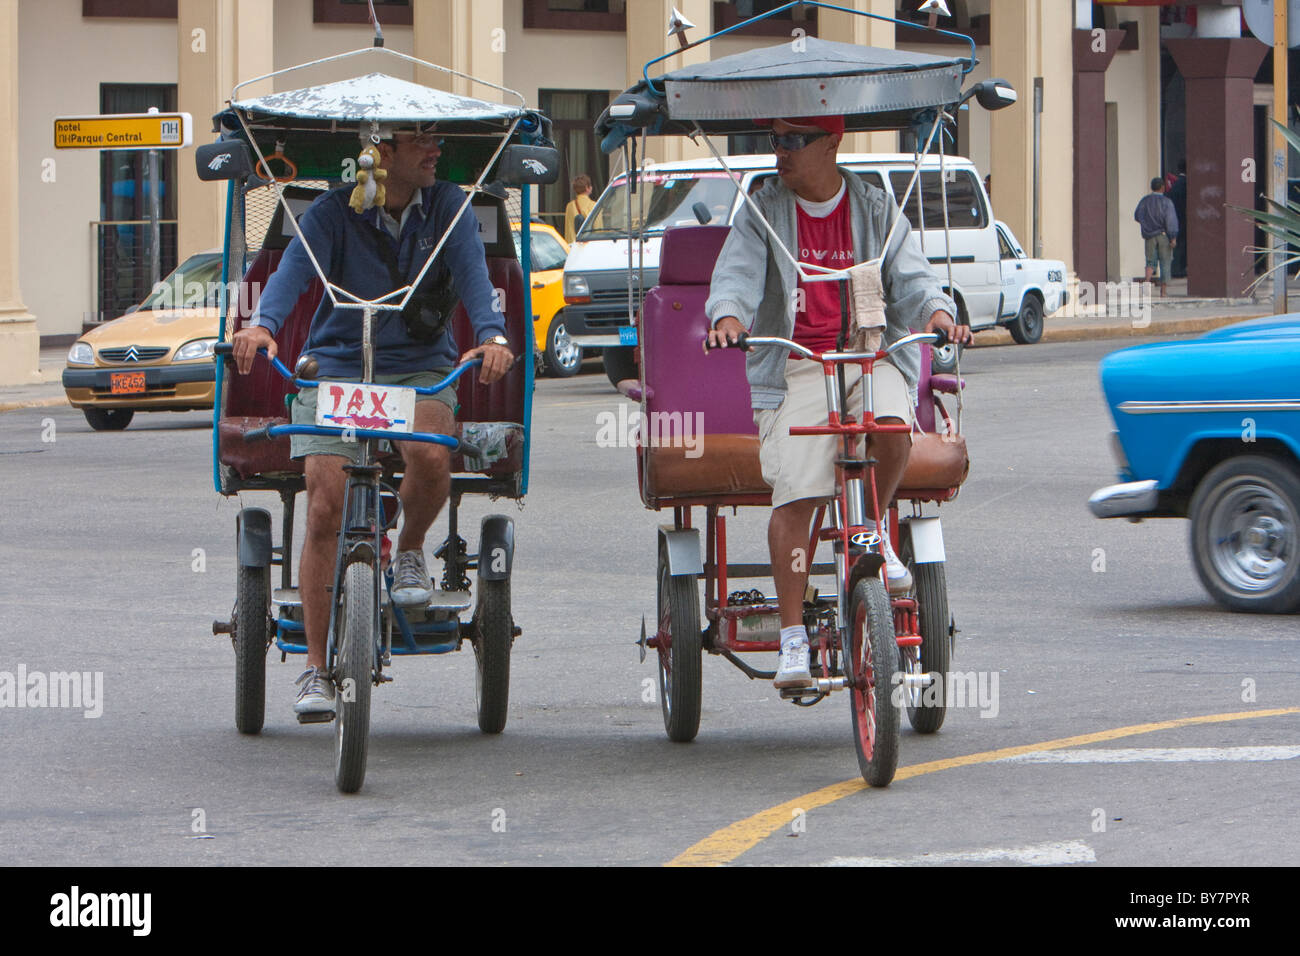 Kuba, Havanna. Fahrrad-Taxis ("Bicitaxis") bieten eine günstige Art der Fortbewegung in Havanna. Stockfoto